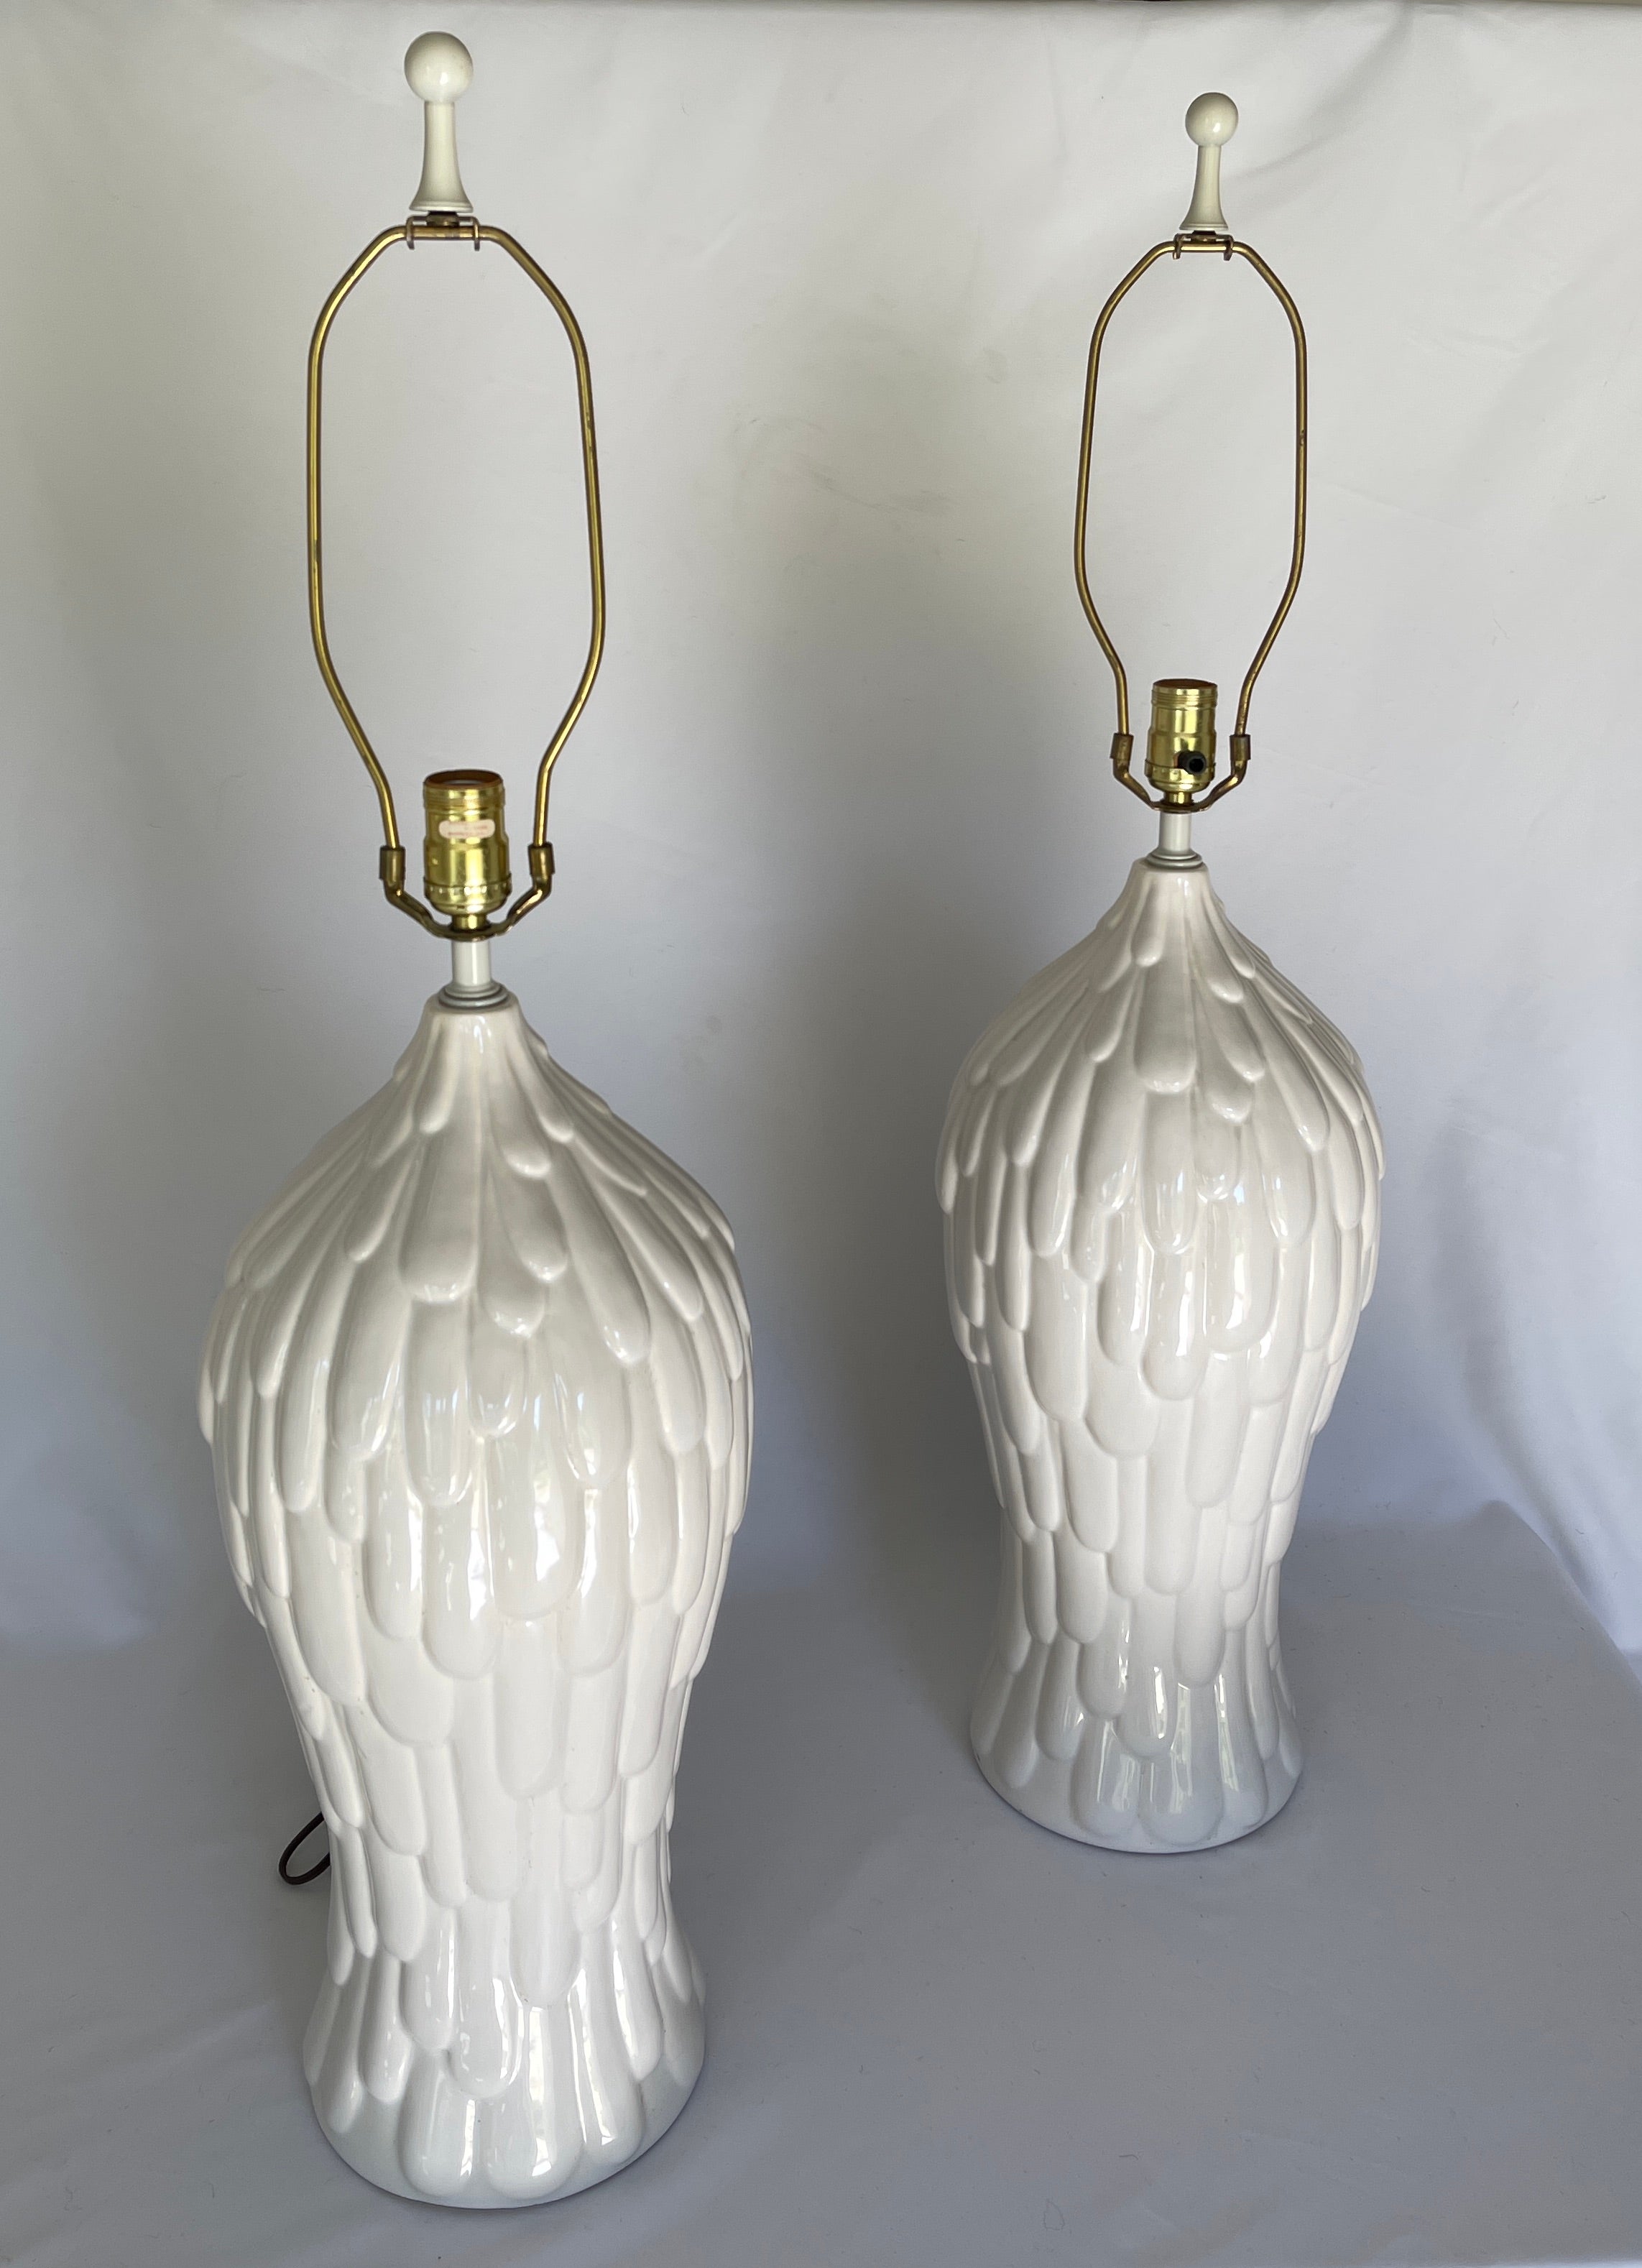 Monumentales Paar weiß glasierter Keramiklampen aus den 1980er Jahren, mit originalen weiß emaillierten Endstücken. Signiert Royal Haeger, mit Papieretikett am Sockel.

Lampen messen:
 35